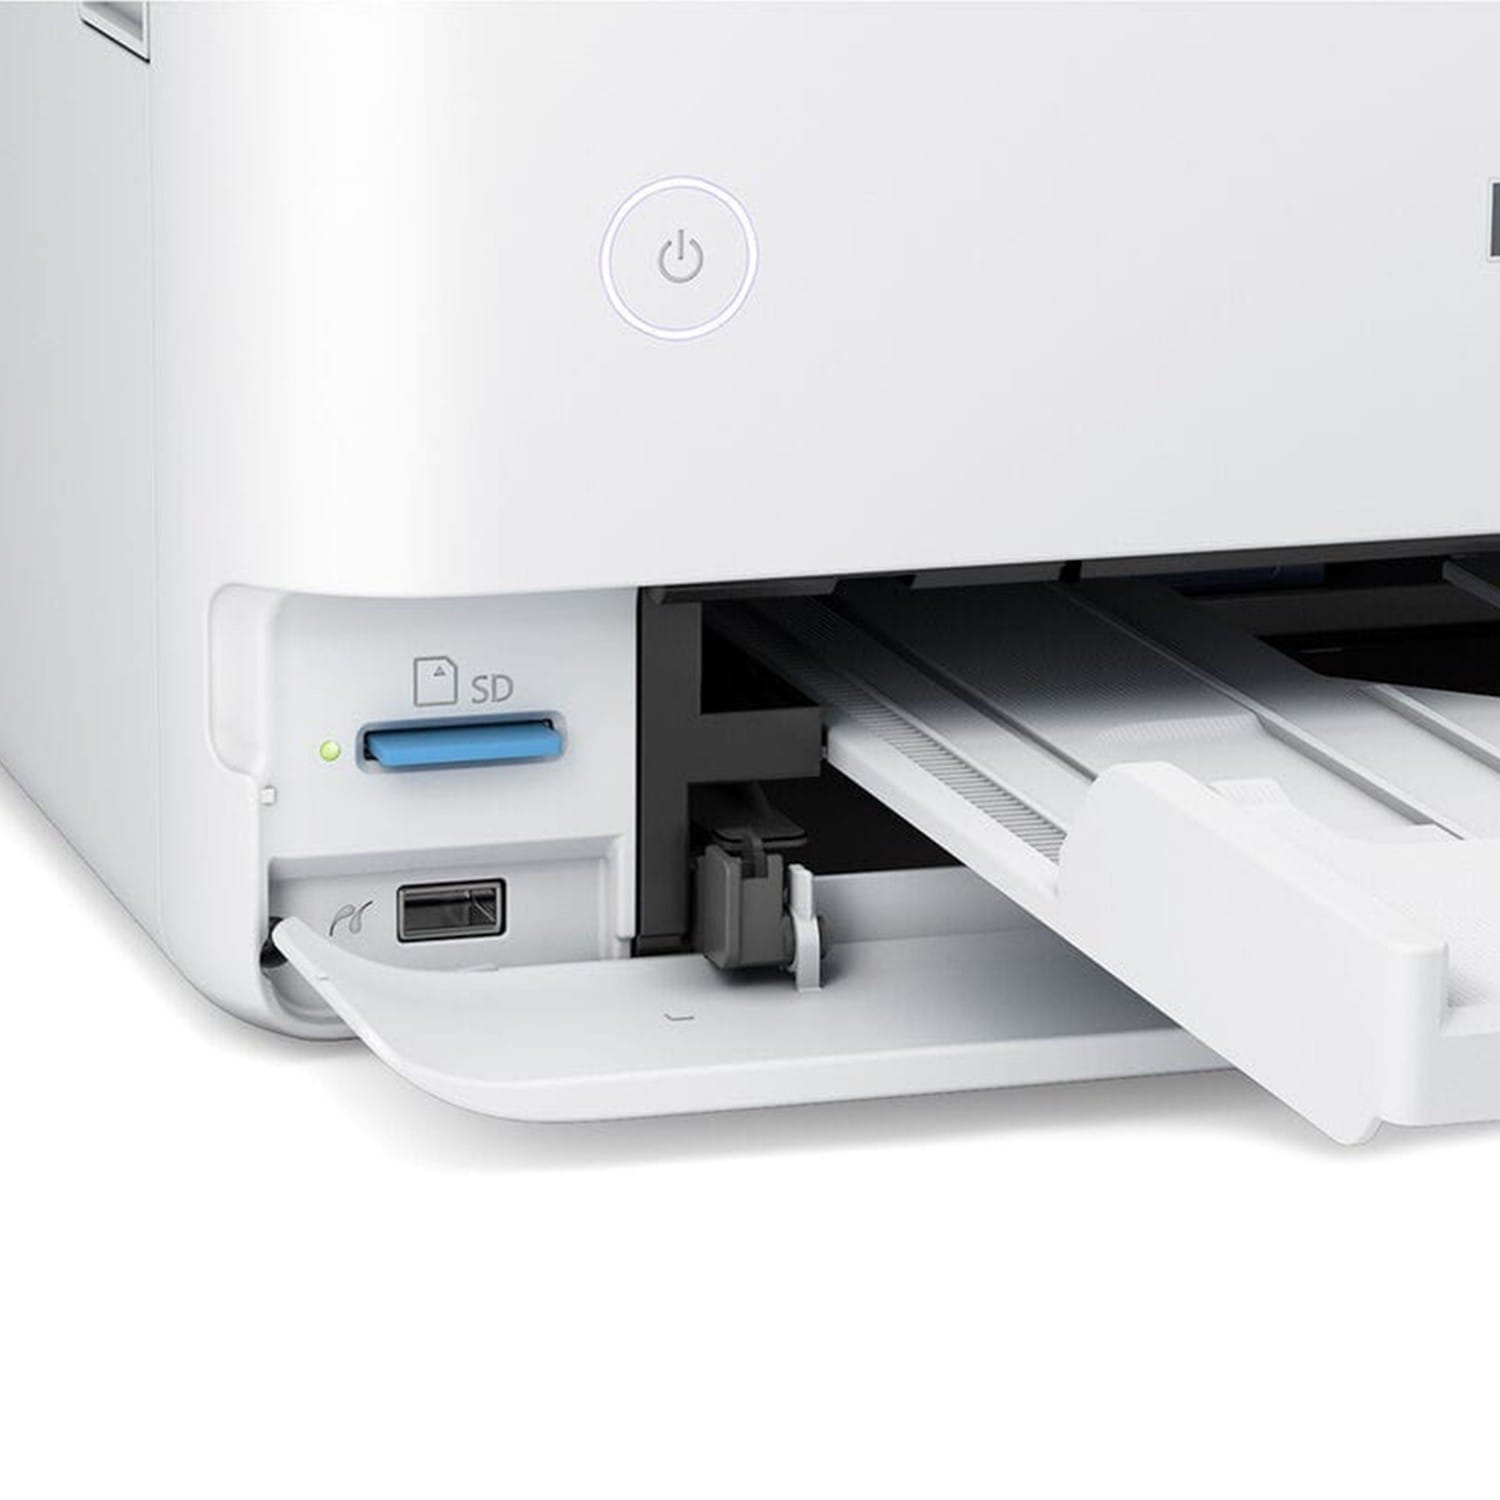 Epson EcoTank ET-8500 Imprimante multifonction 3 en 1 pour copie